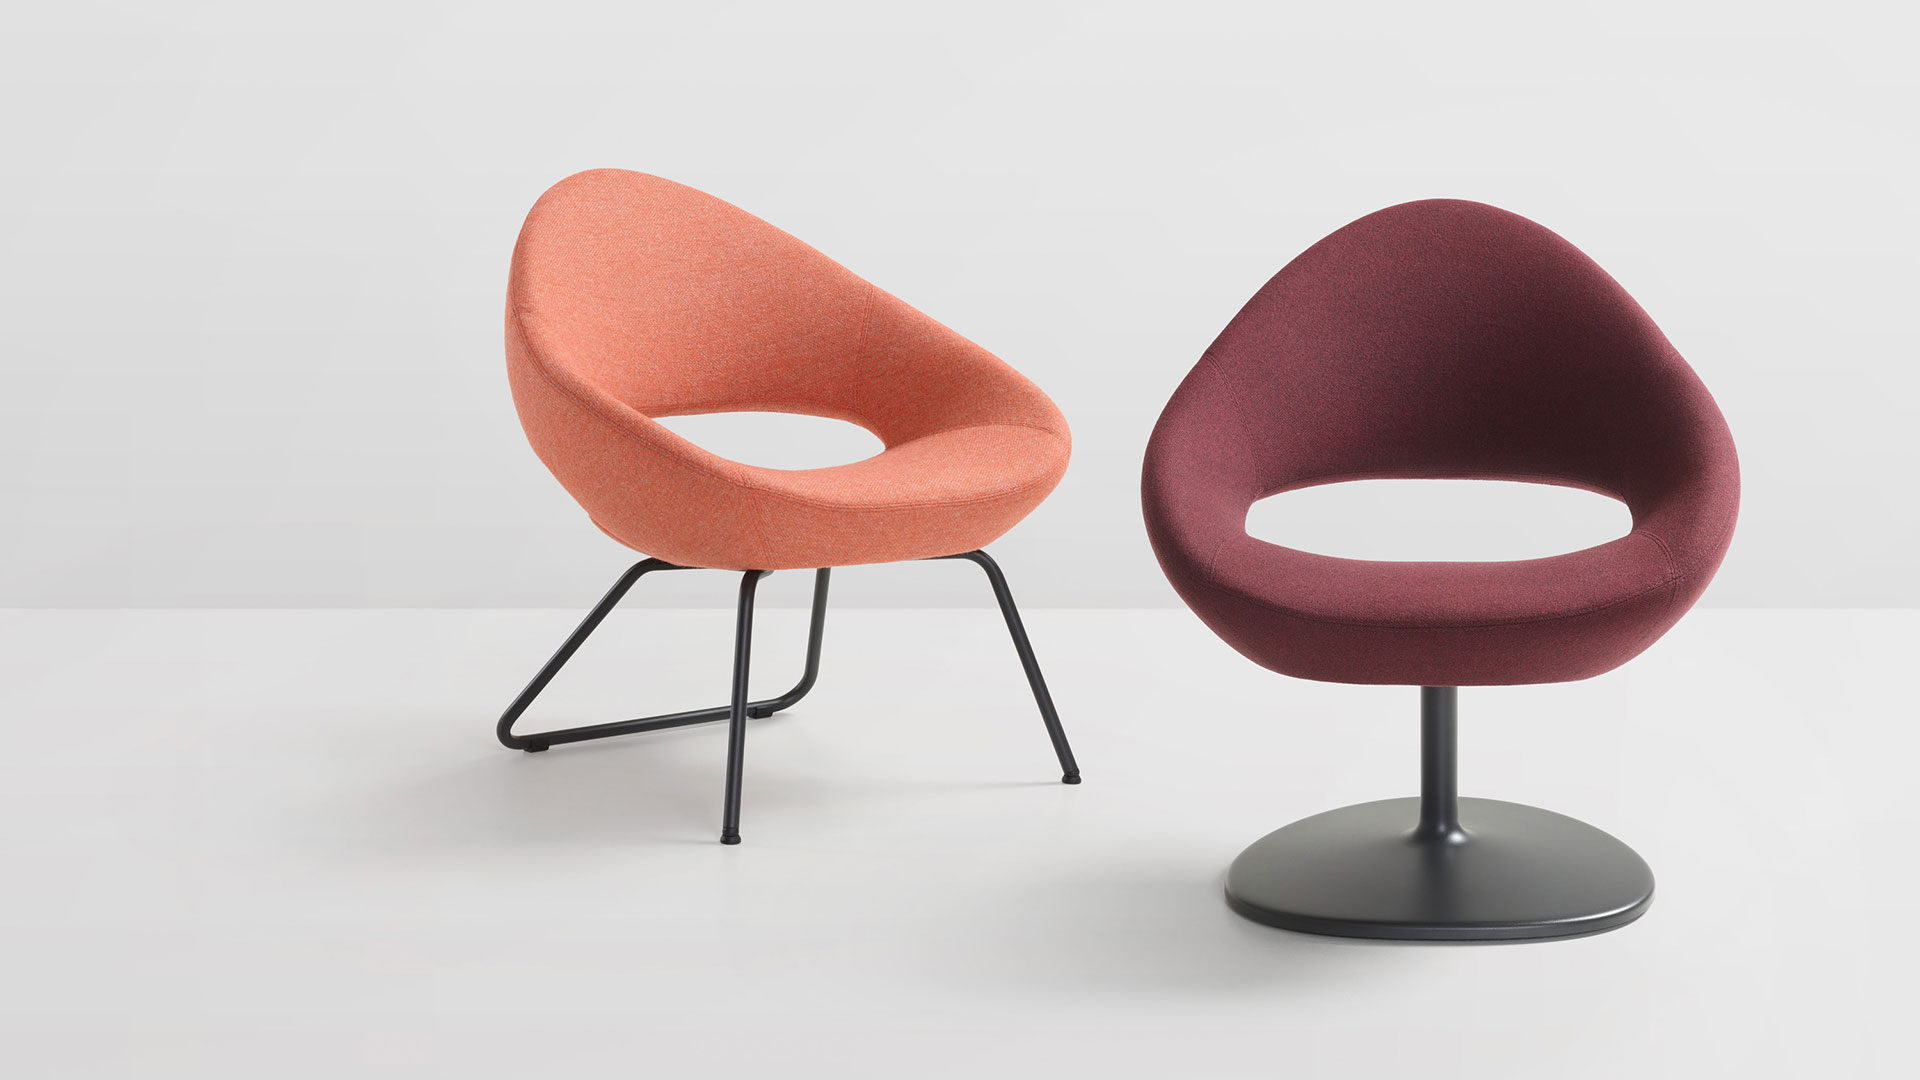 Artifort_Shark-Lounge_fauteuil_Chair